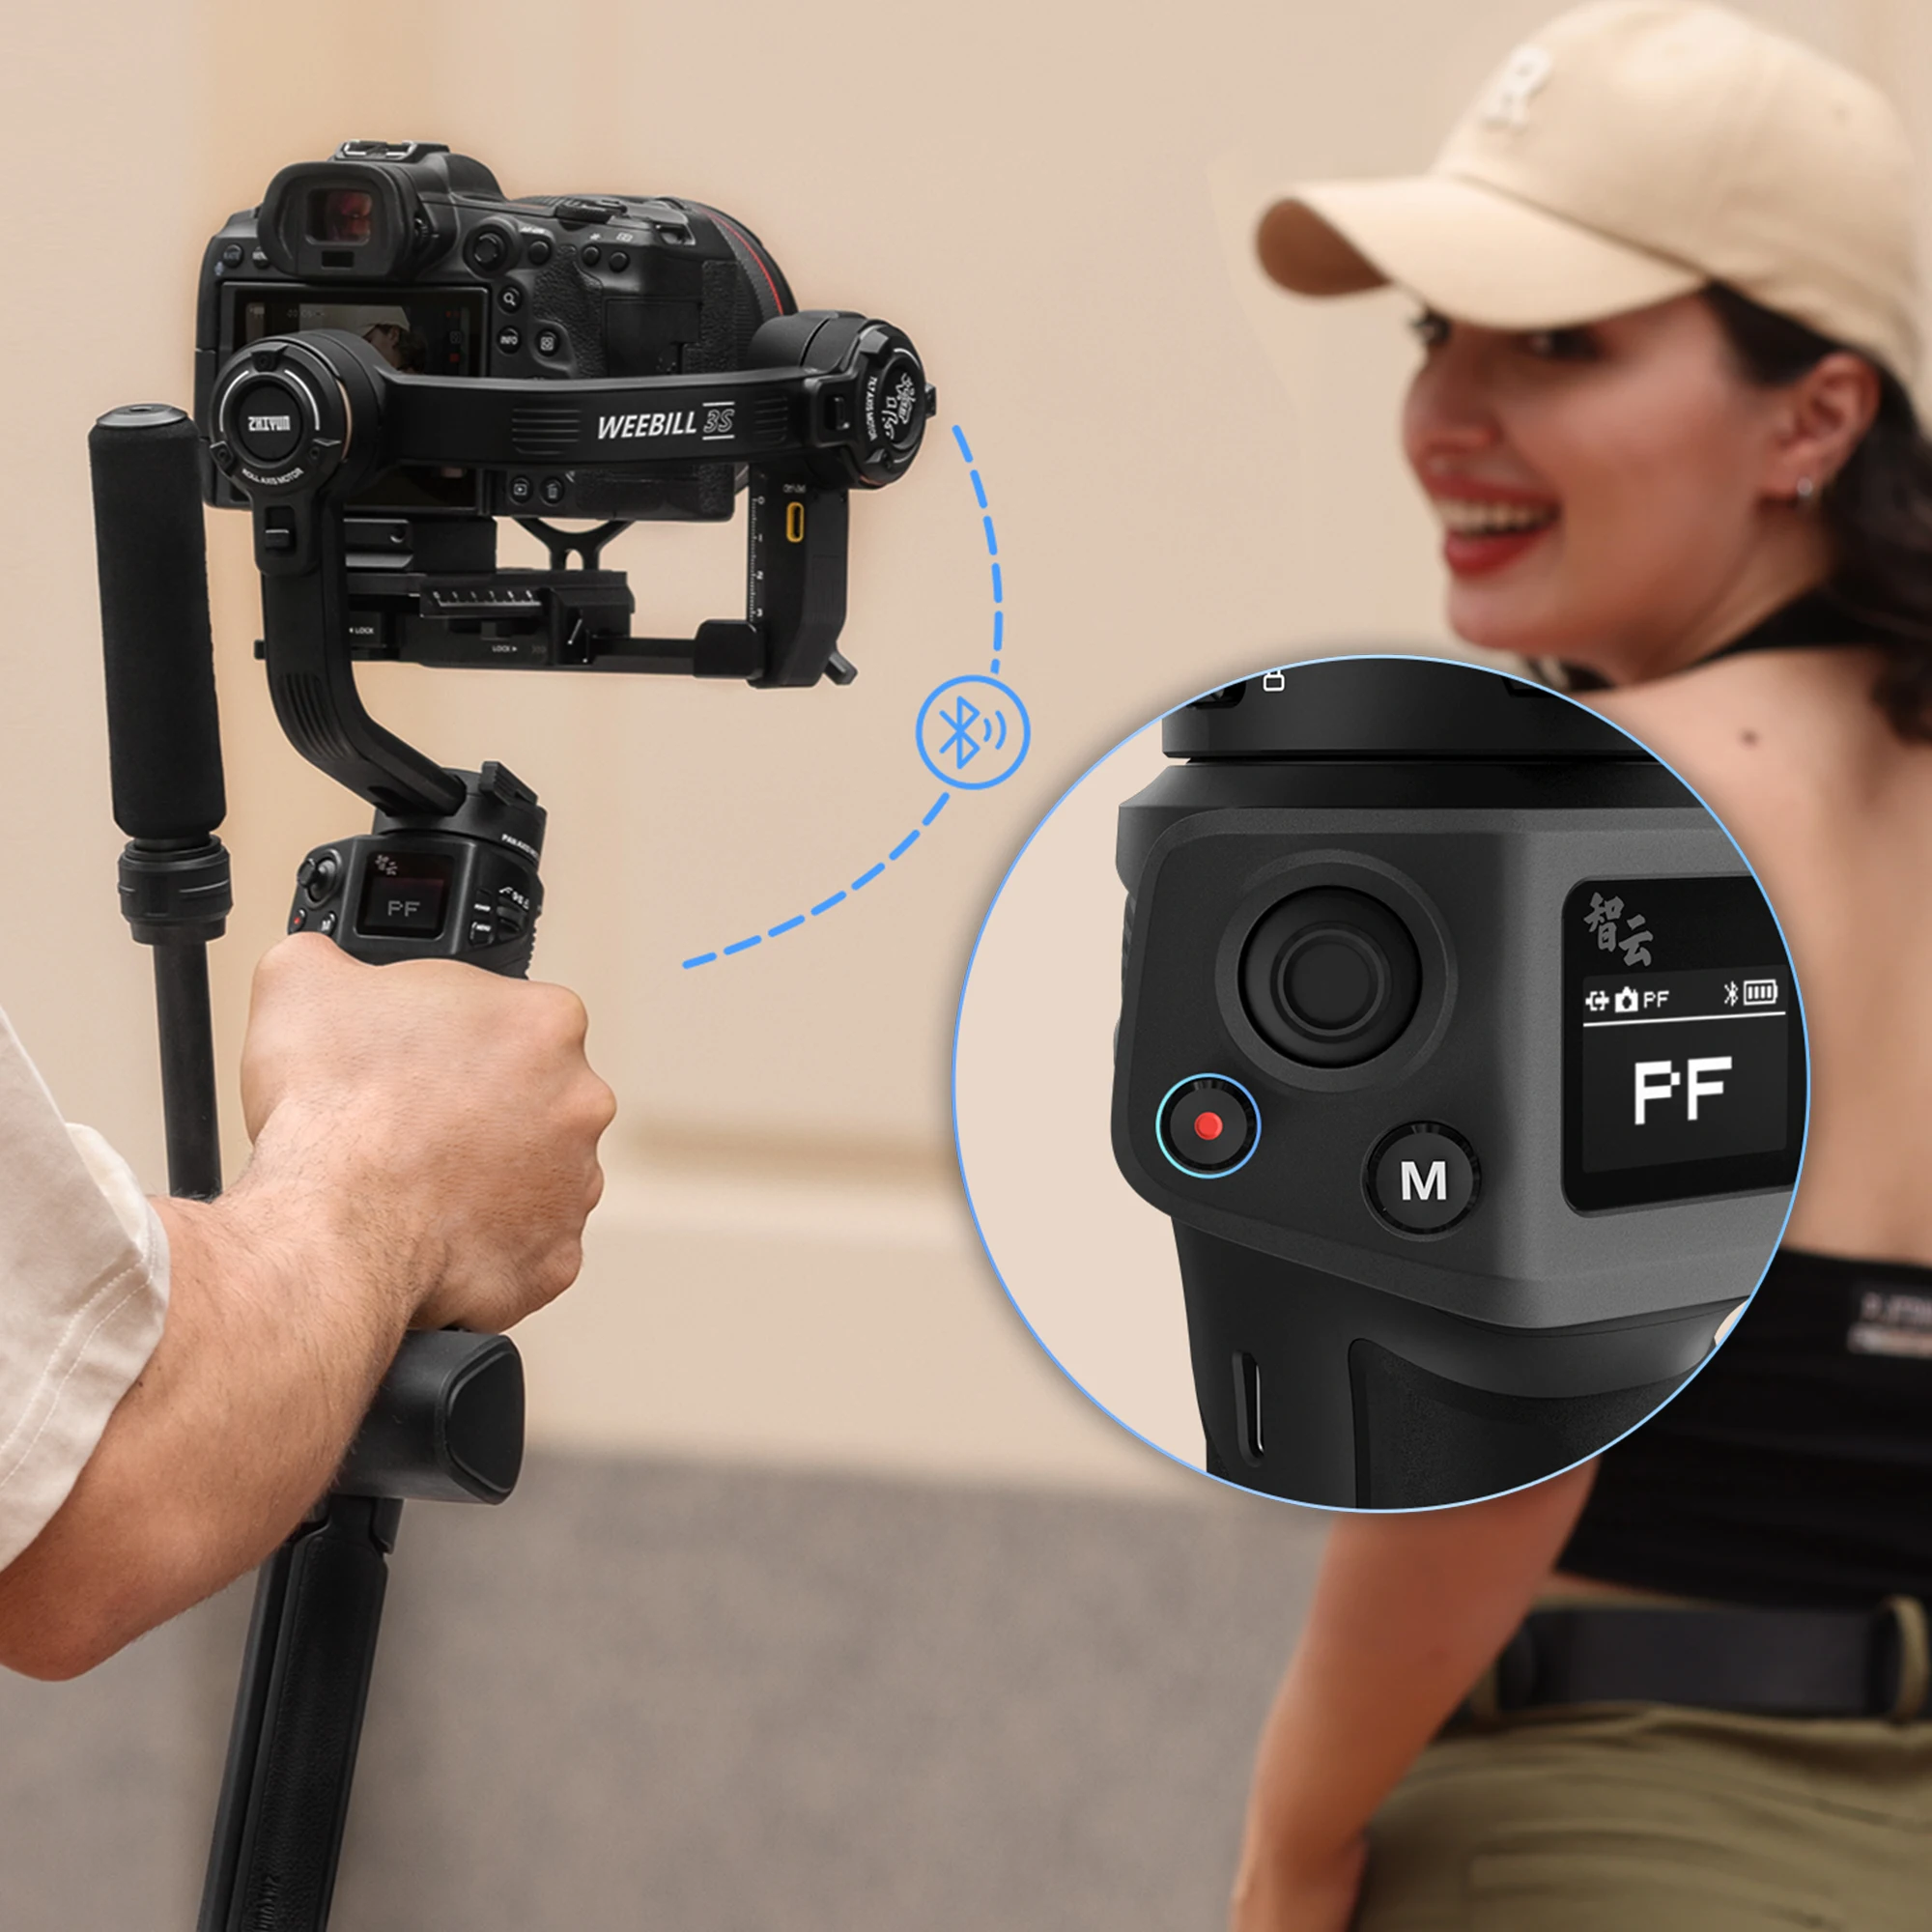 ZHIYUN Oficial Weebill 3S Cámara Gimbal Estabilizador de 3 ejes de mano  para cámaras DSLR sin espejo para Sony Canon Panasonic Nikon